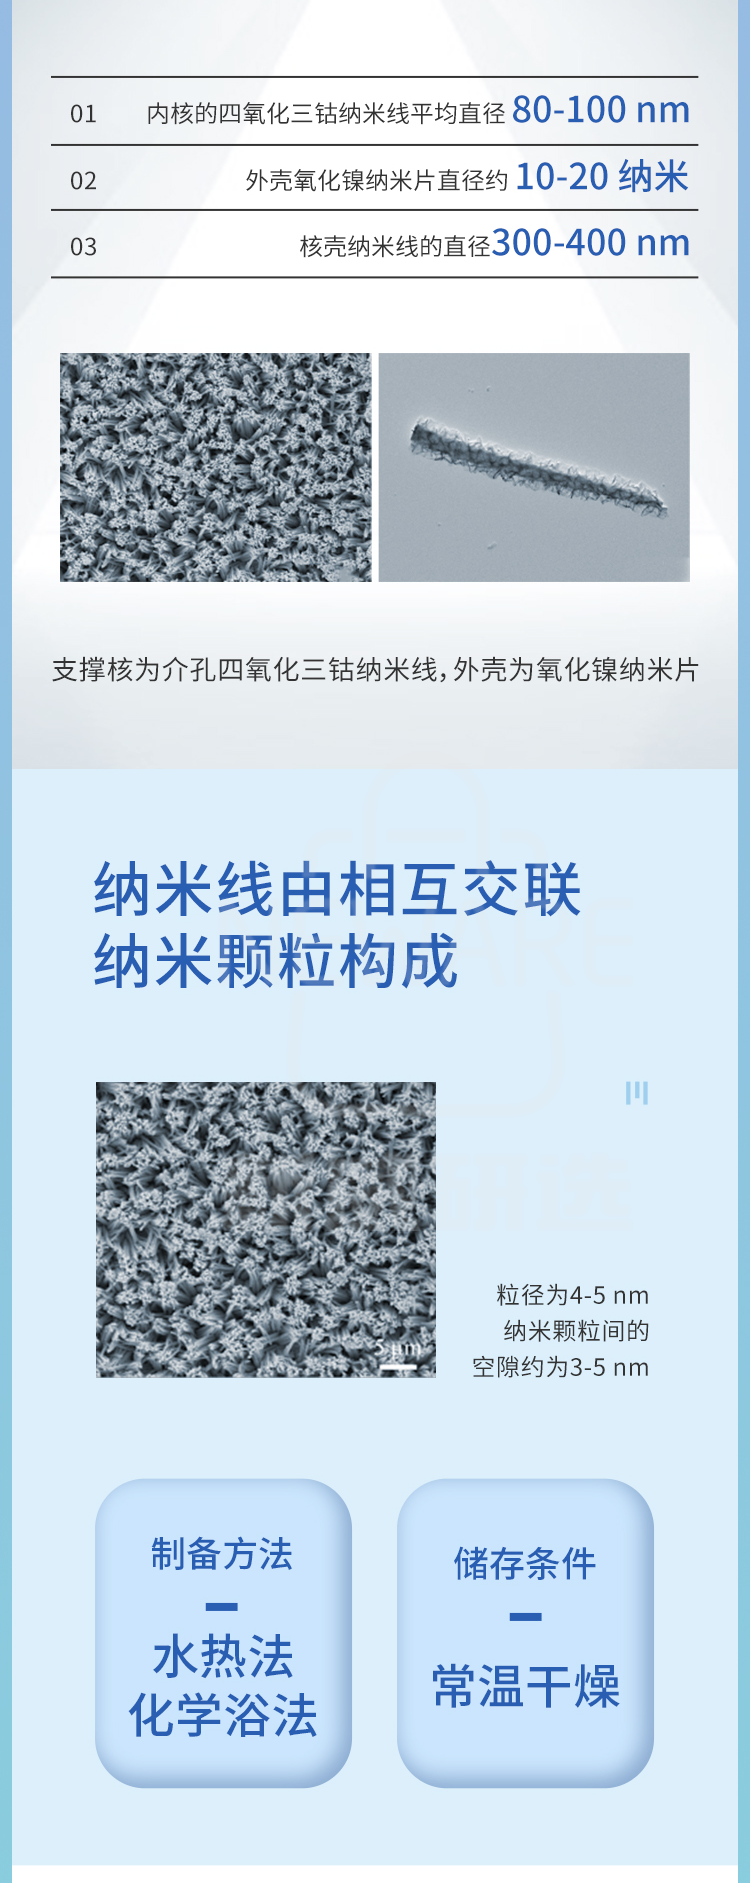 导电玻璃负载四氧化三钴-氧化镍(Co3O4/NiO)核壳阵列商品介绍2